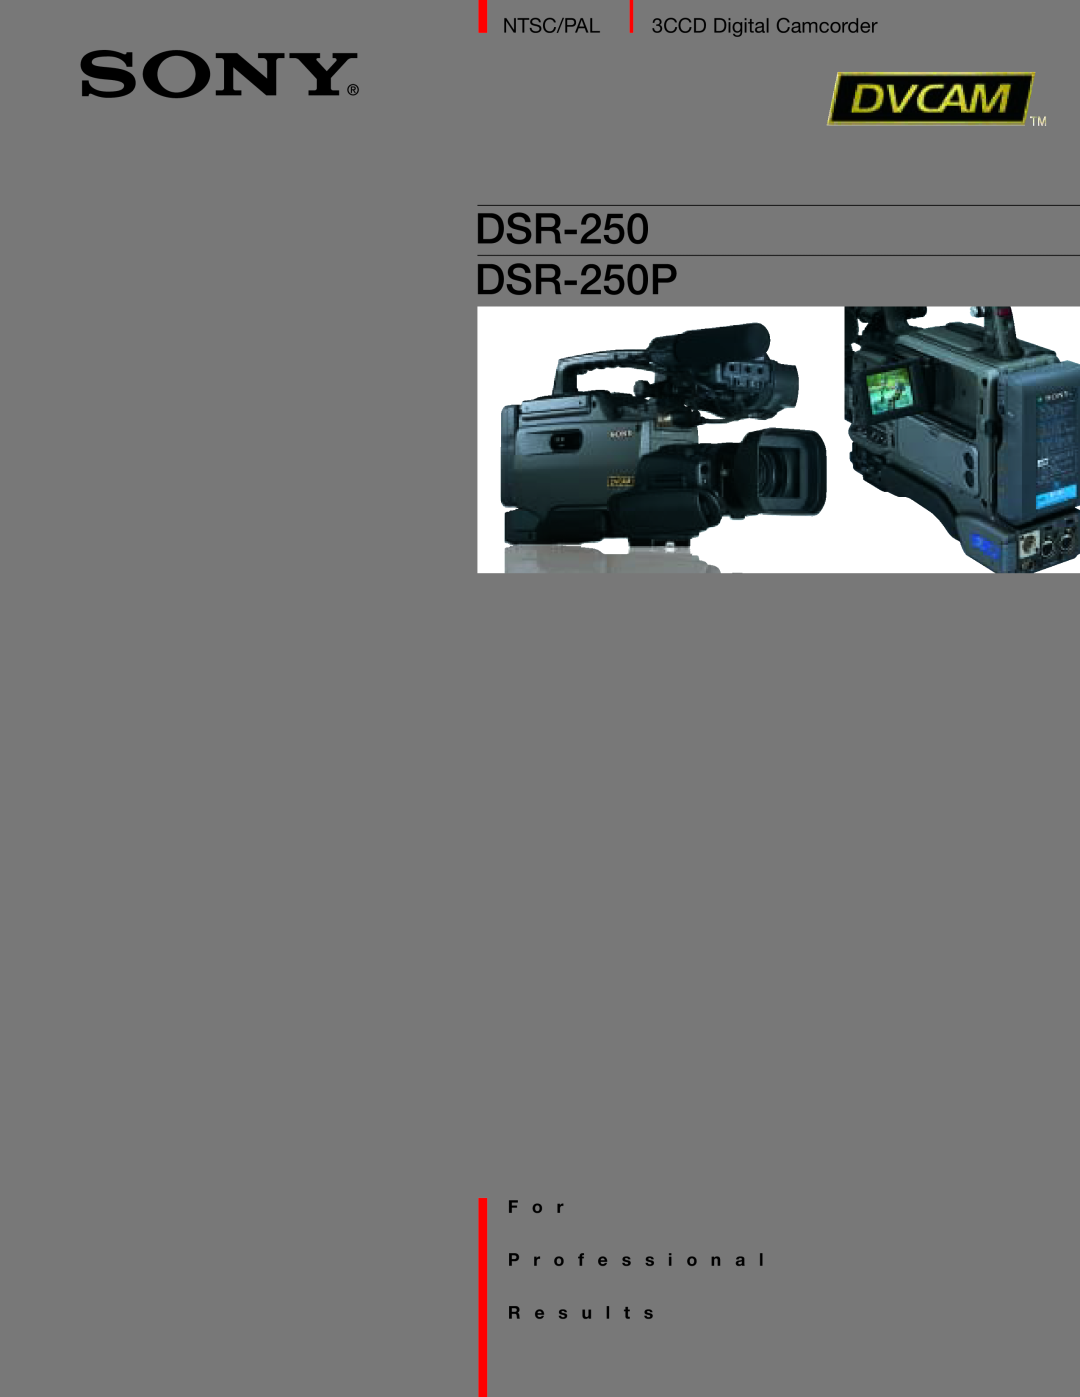 Sony manual DSR-250 DSR-250P, F o r P r o f e s s i o n a l, R e s u l t s, Ntsc/Pal, 3CCD Digital Camcorder 